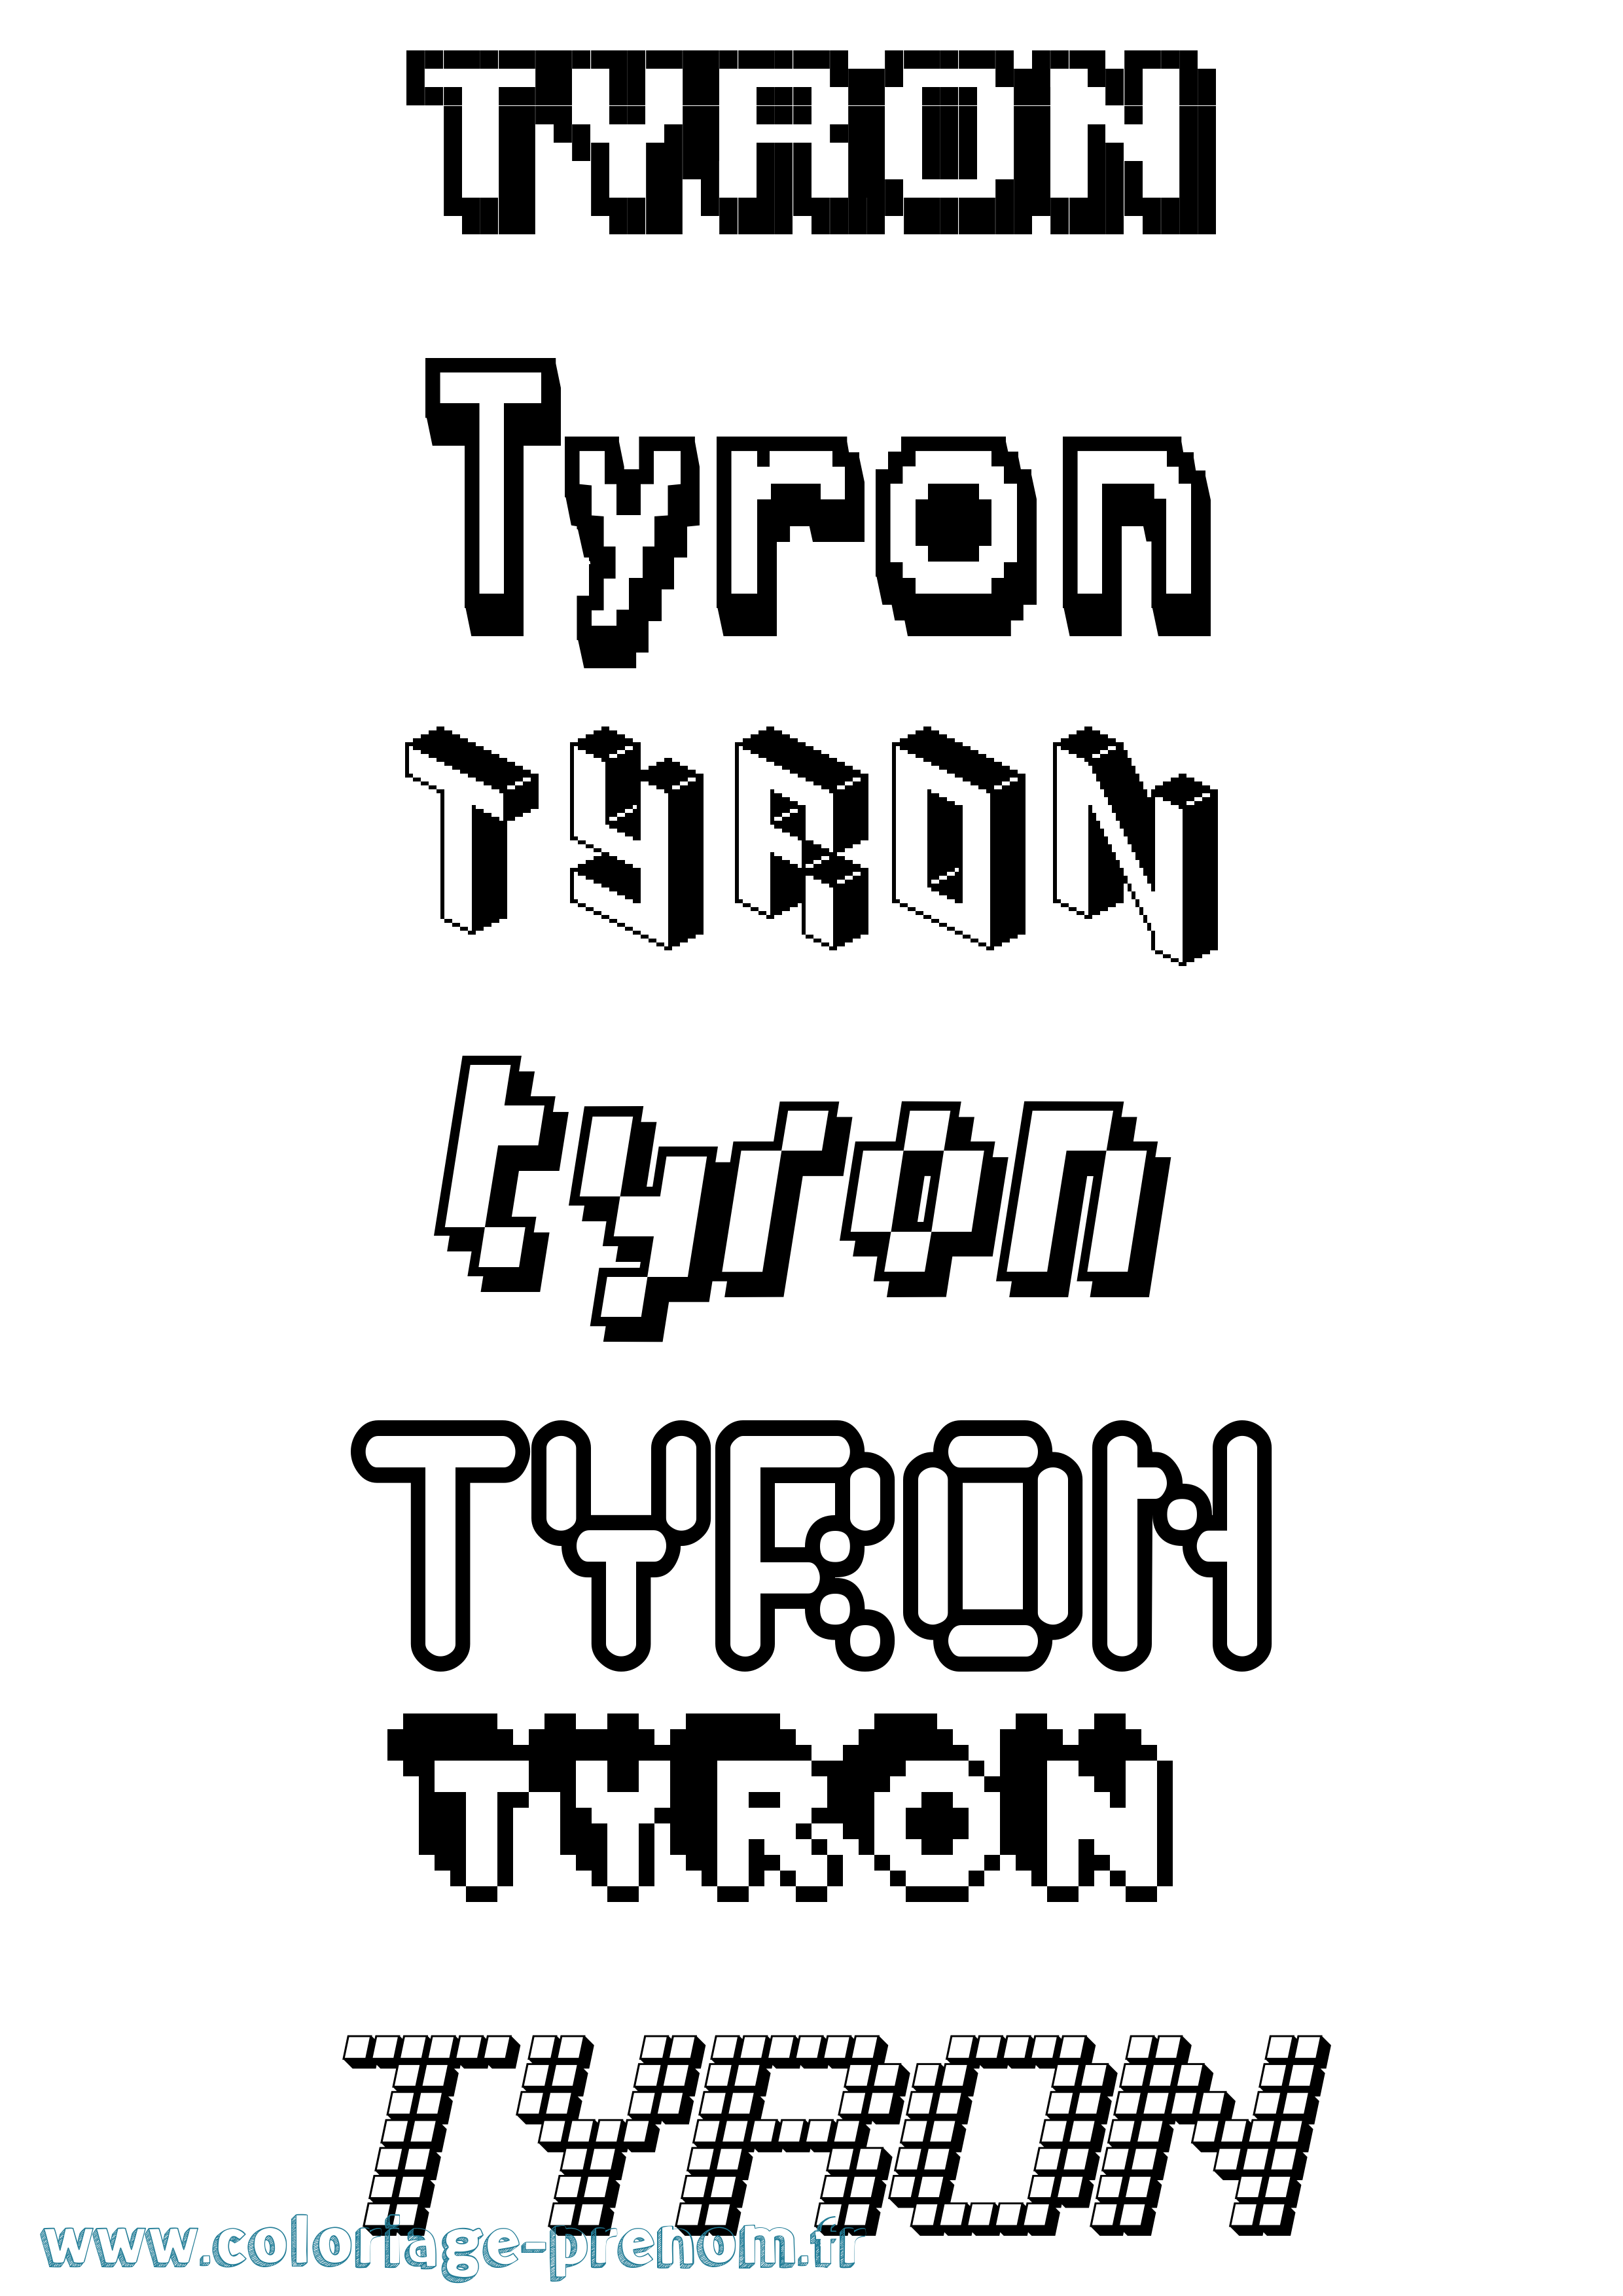 Coloriage prénom Tyron